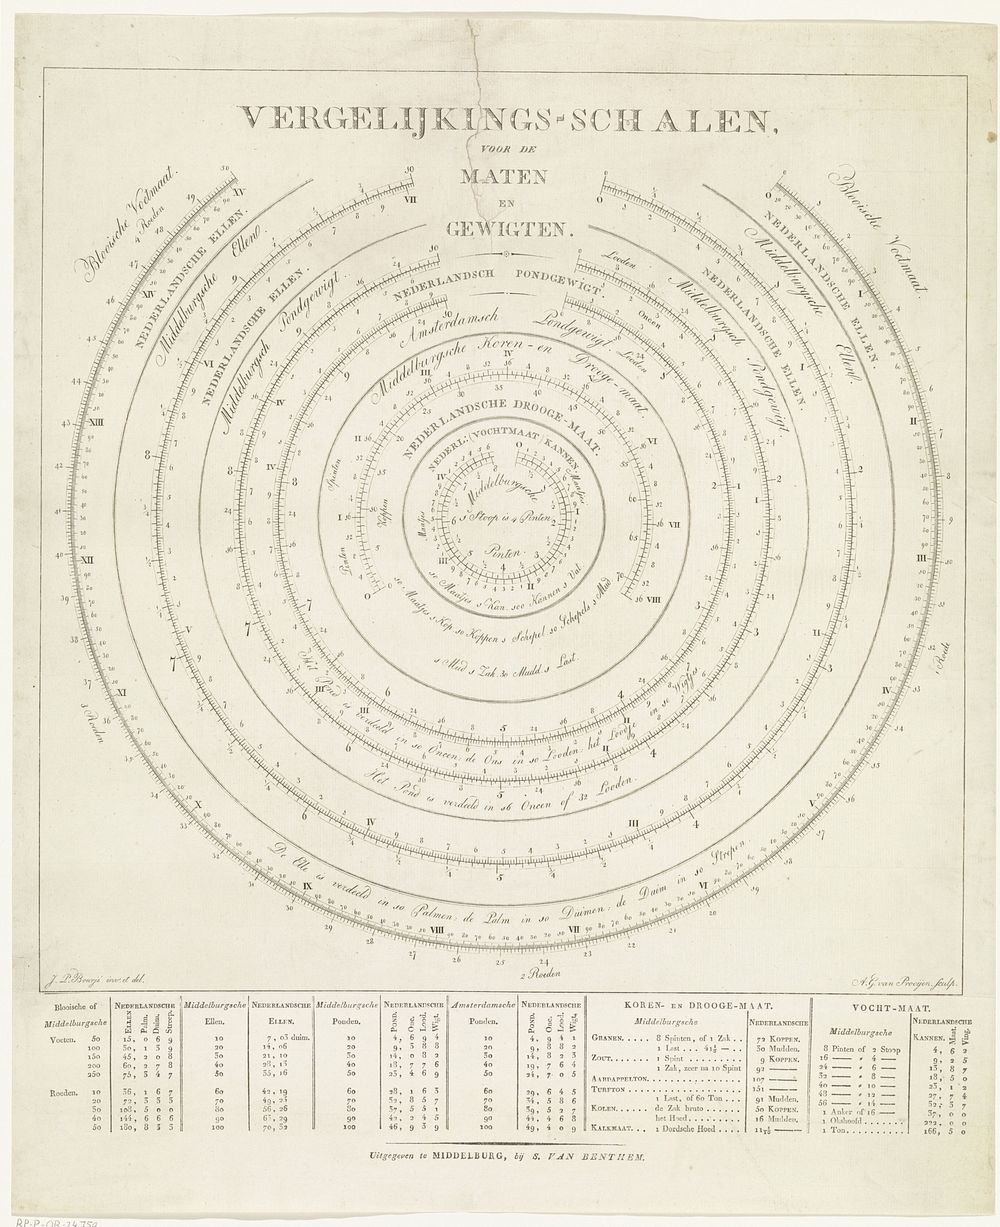 Vergelijkings-Schalen voor de Maten en Gewigten (1820) by Adriaan Gerrit van Prooijen, Johan Pieter Bourjé and S van Benthem